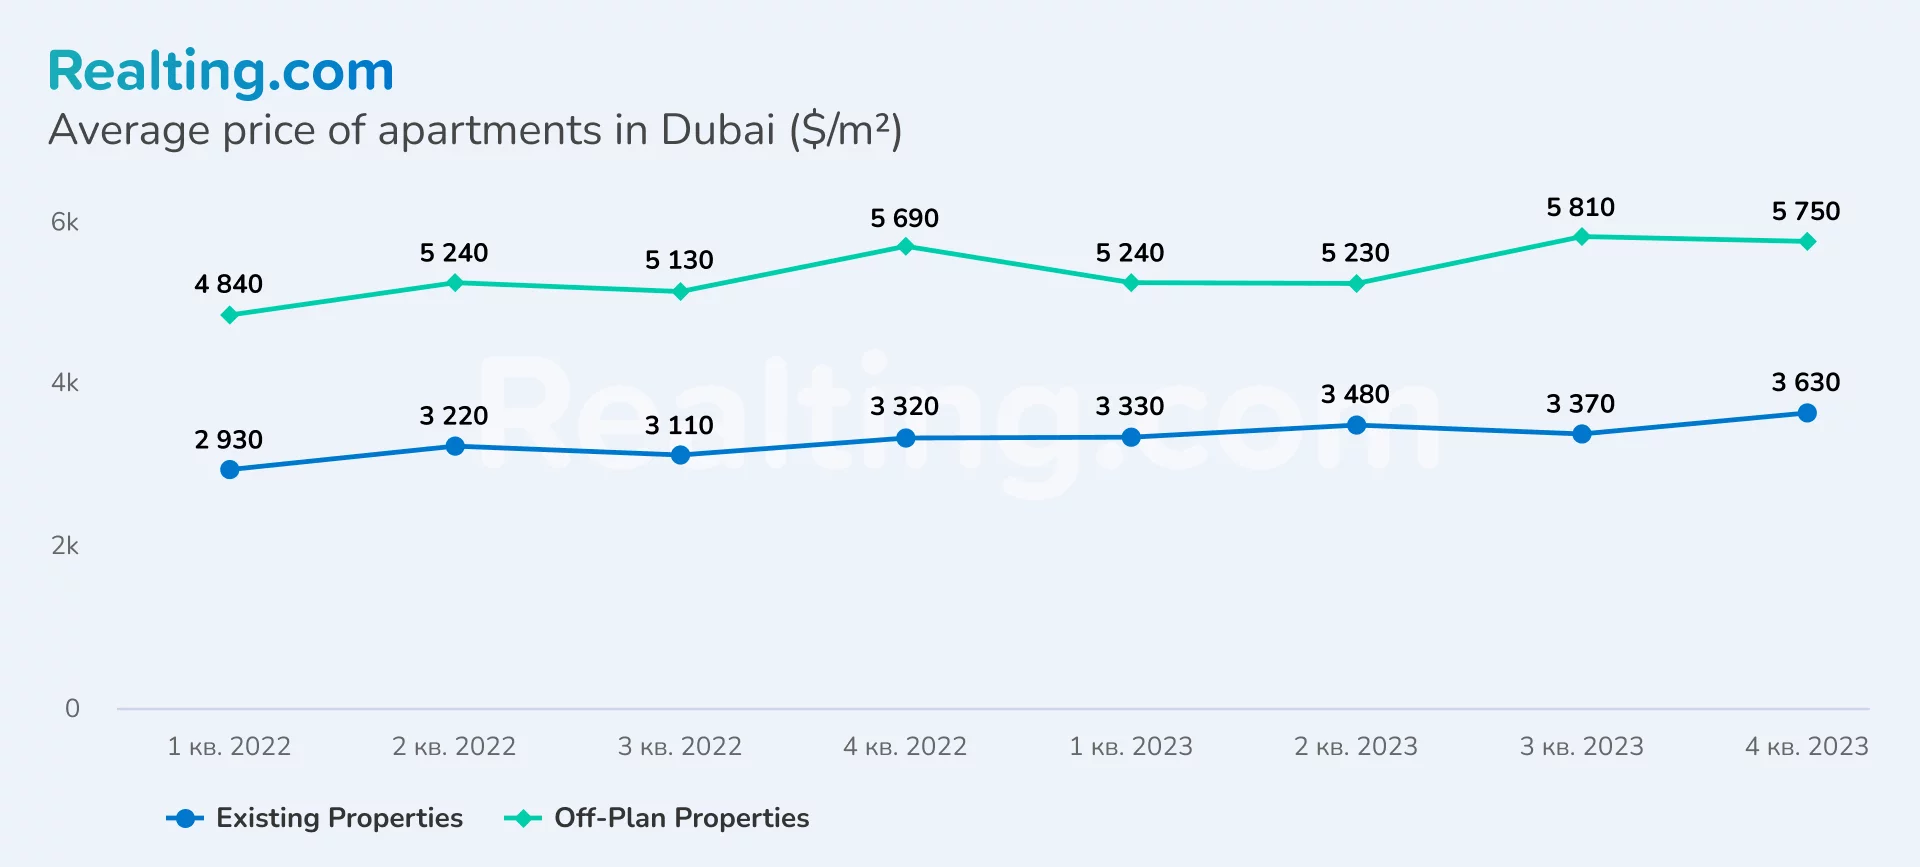 Average price per sq. m. of apartment in Dubai